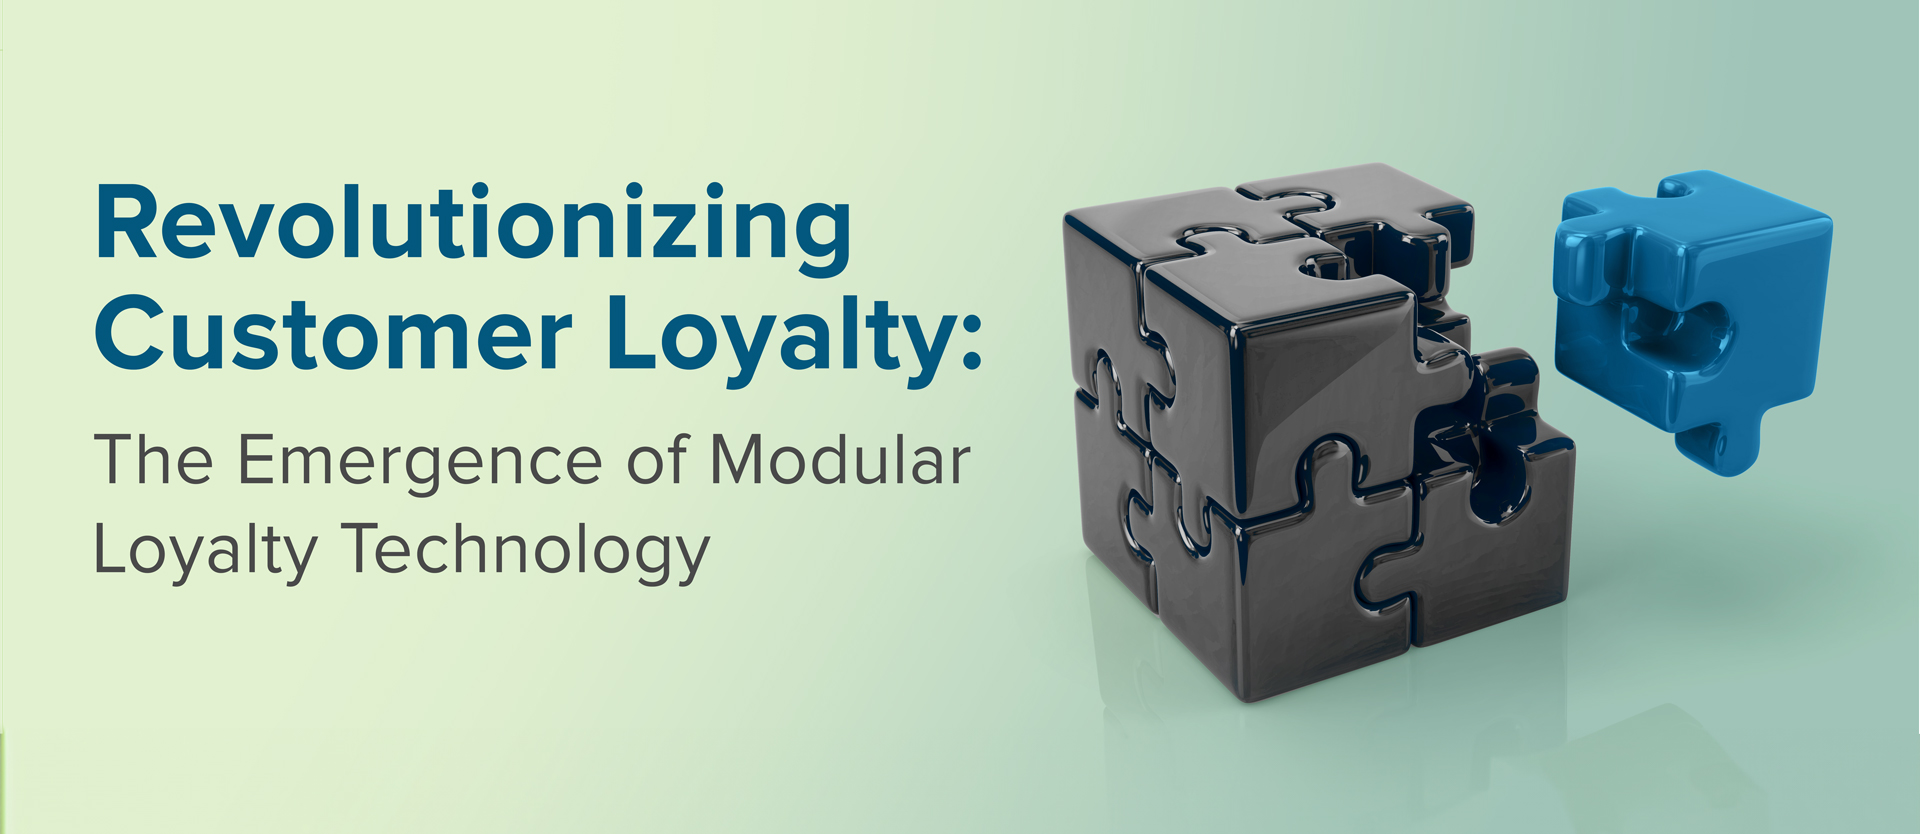 Modular Loyalty eBook